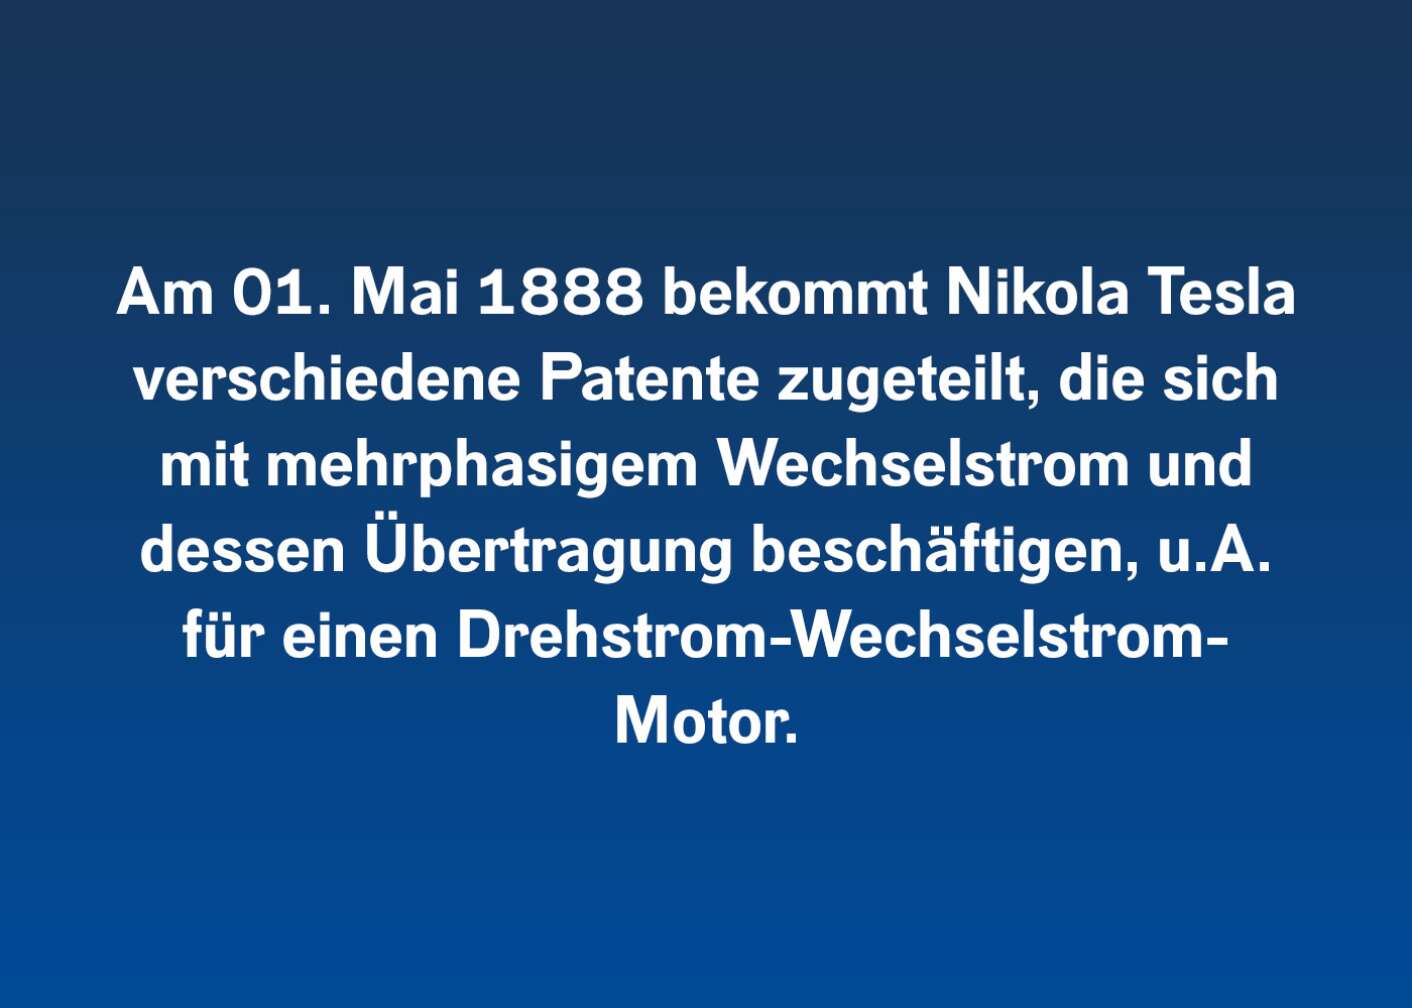 Am 01. Mai 1888 bekommt Nikola Tesla verschiedene Patente zugeteilt, die sich mit mehrphasigem Wechselstrom und dessen Übertragung beschäftigen, u. A. für einen Drehstrom-Wechselstrom Motor.